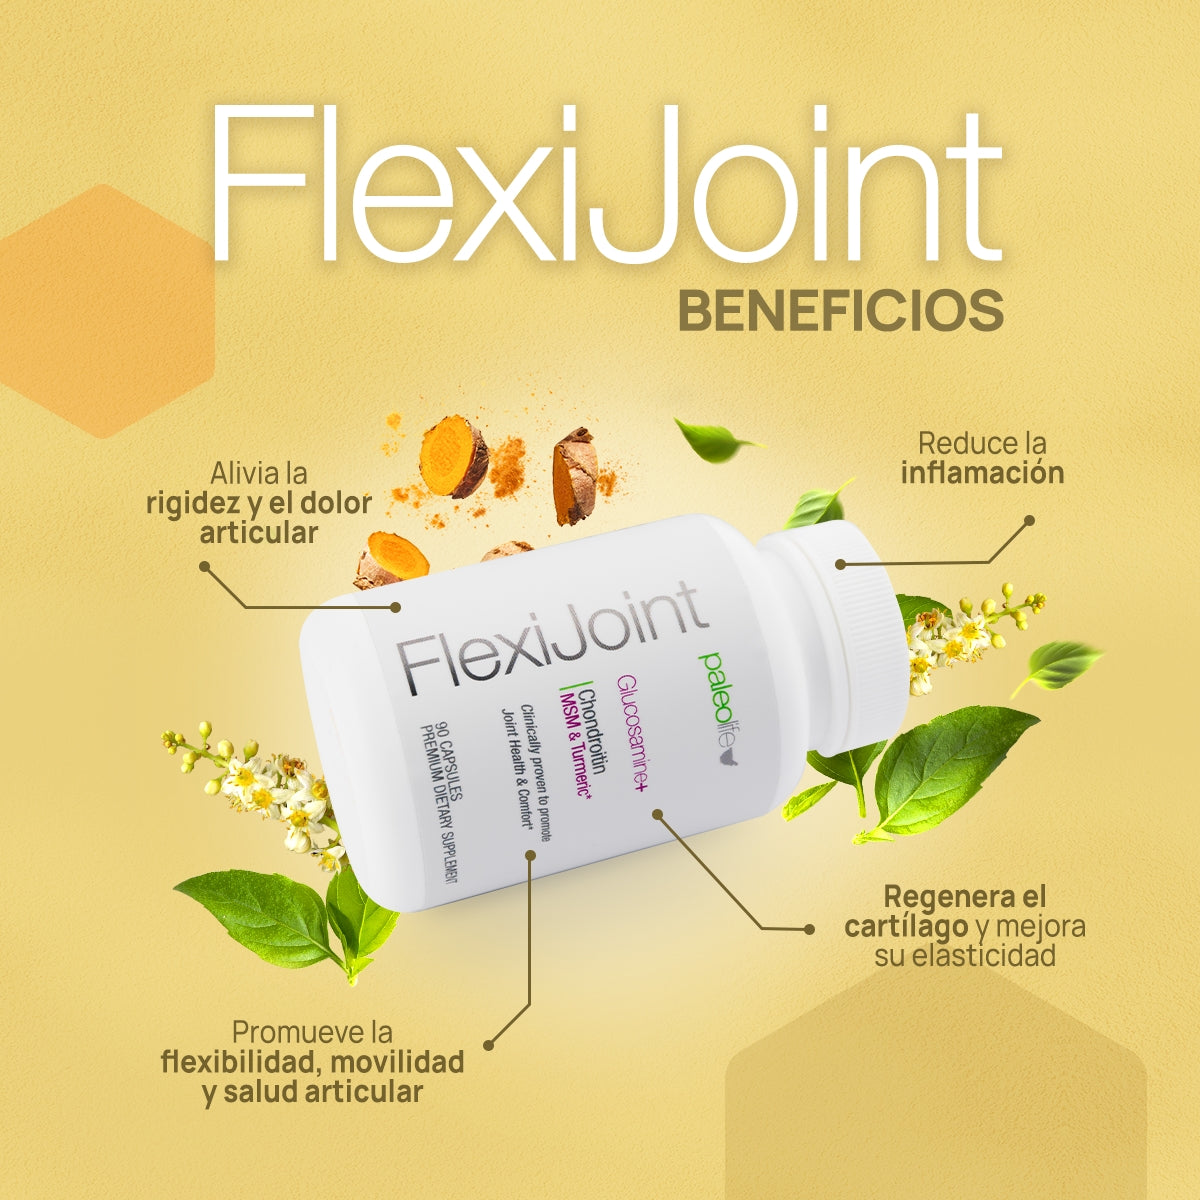 FlexiJoint - Joint Health & Confort